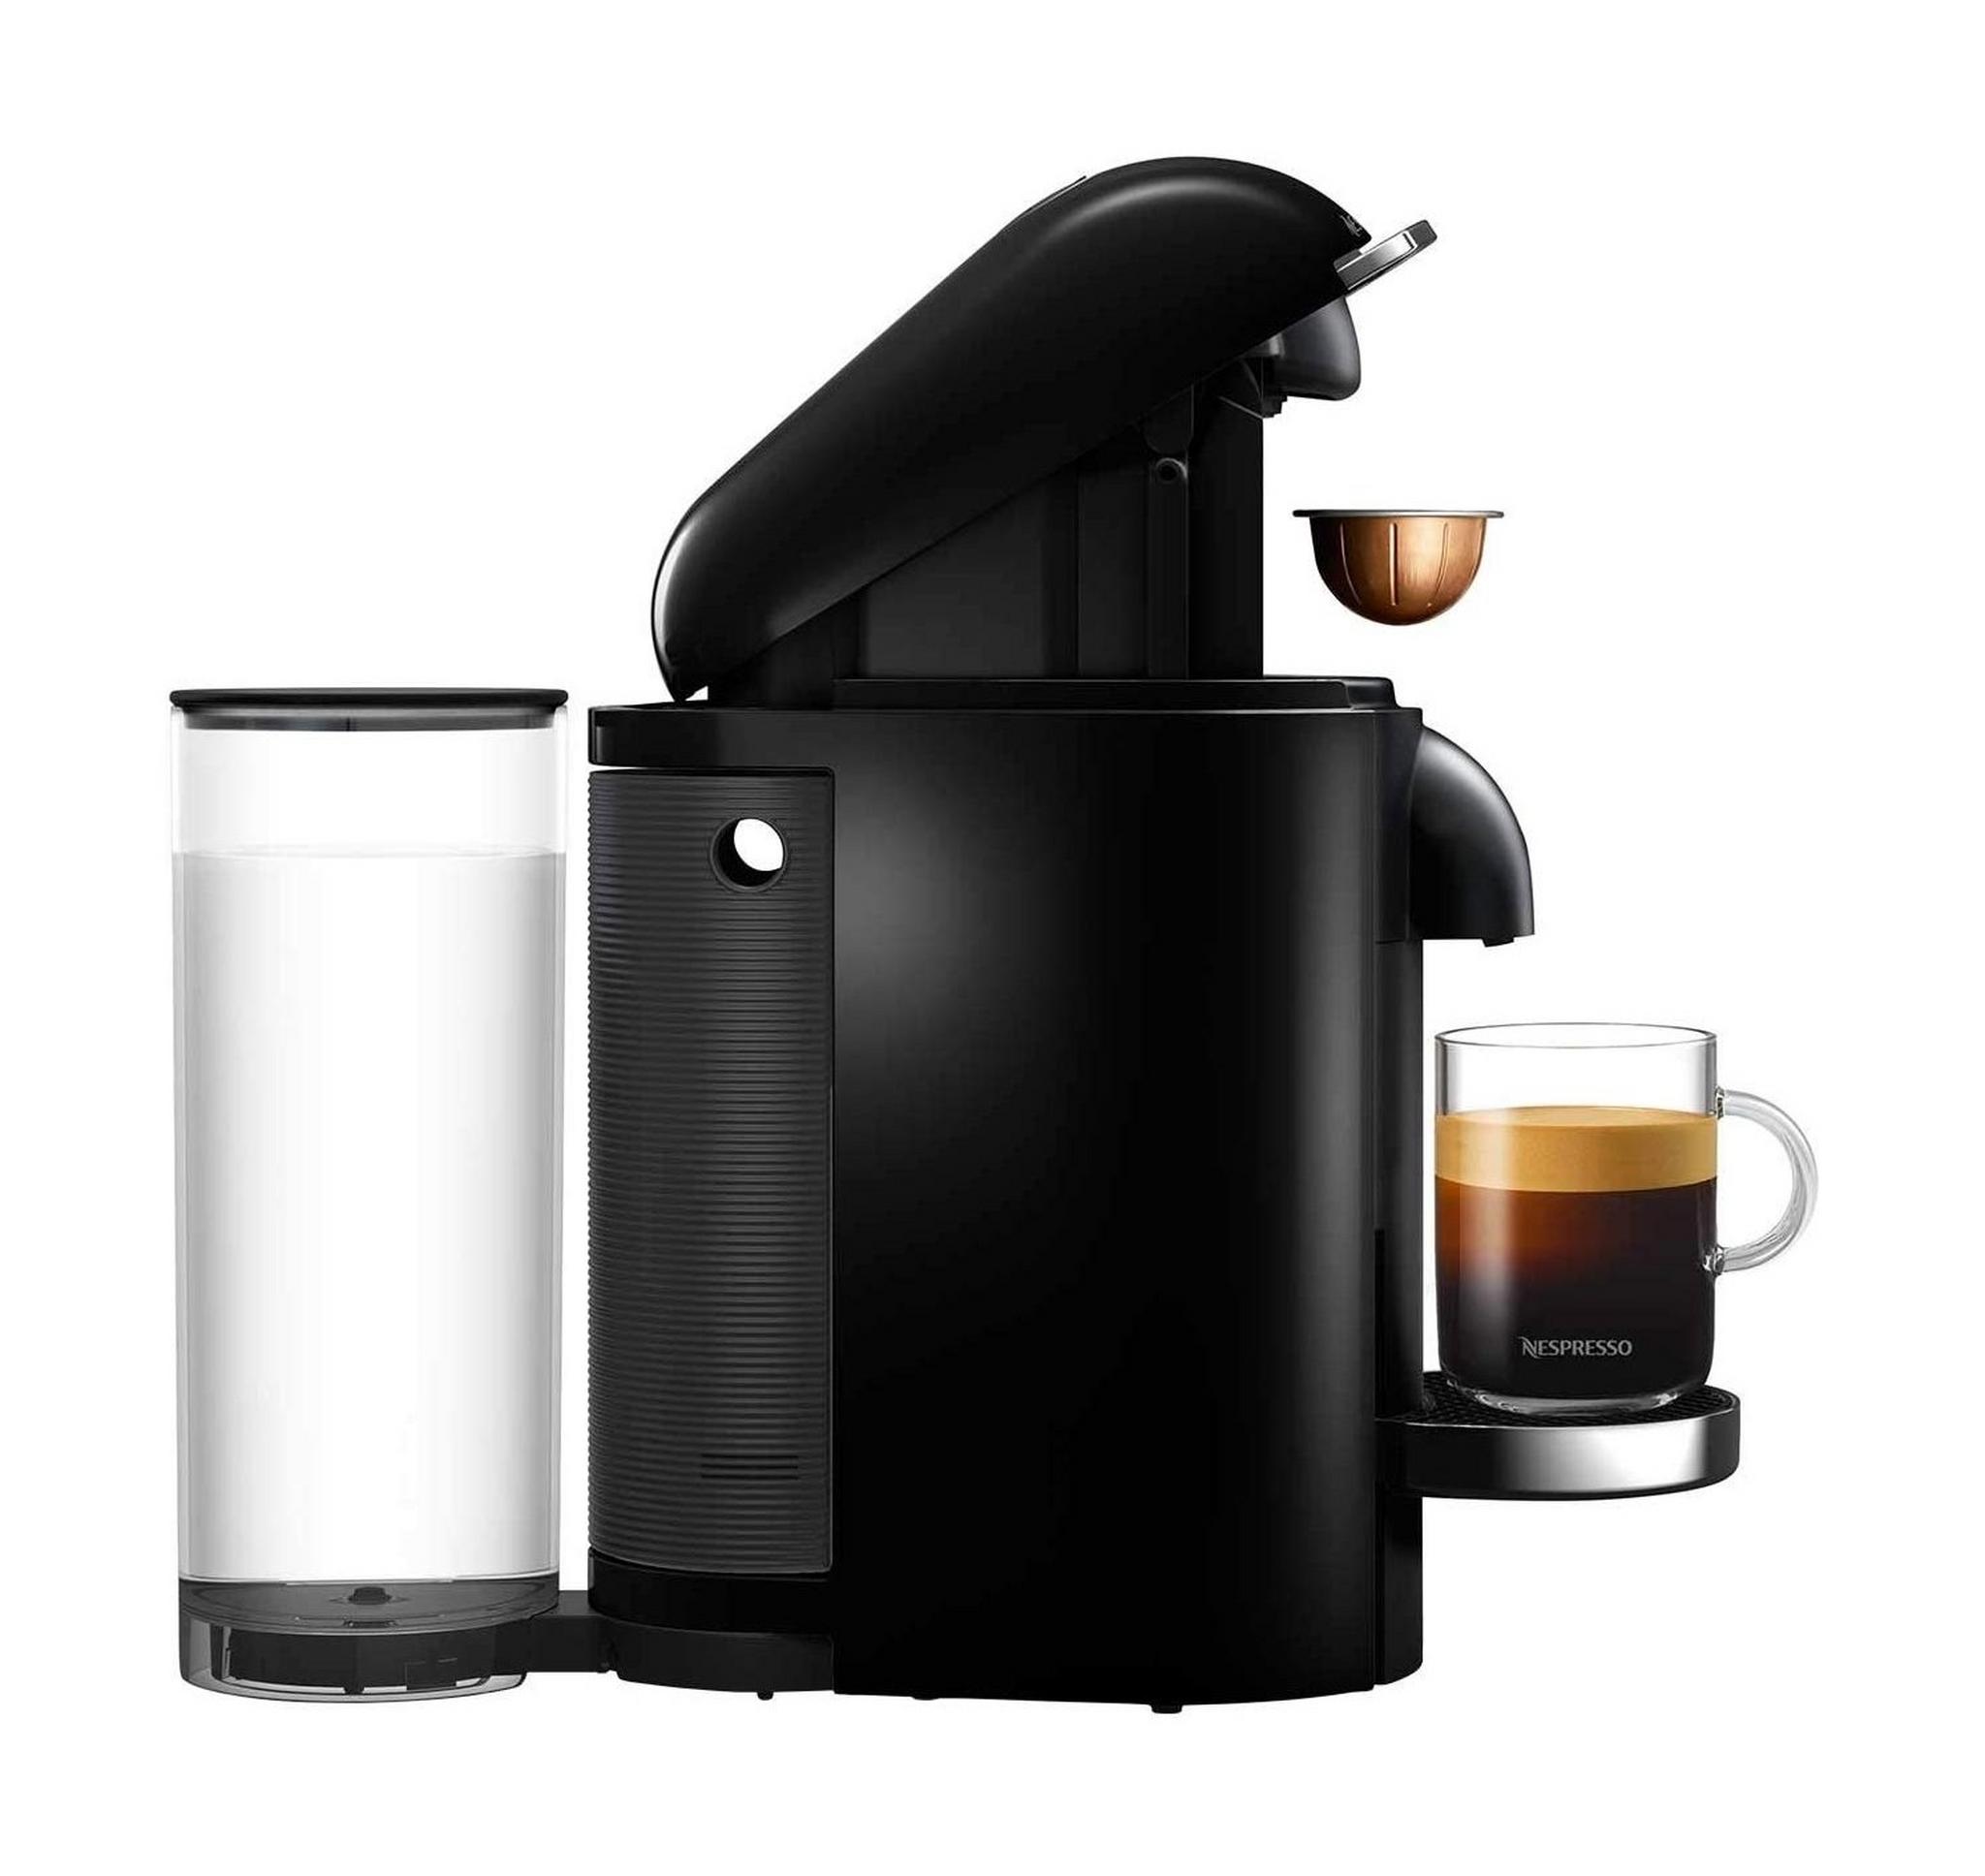 ماكينة تحضير القهوة فيرتو بلس من نسبريسو، قدرة 1300 وات، سعة 1.7 لتر، GCB2-GB-BK-NE1 - أسود